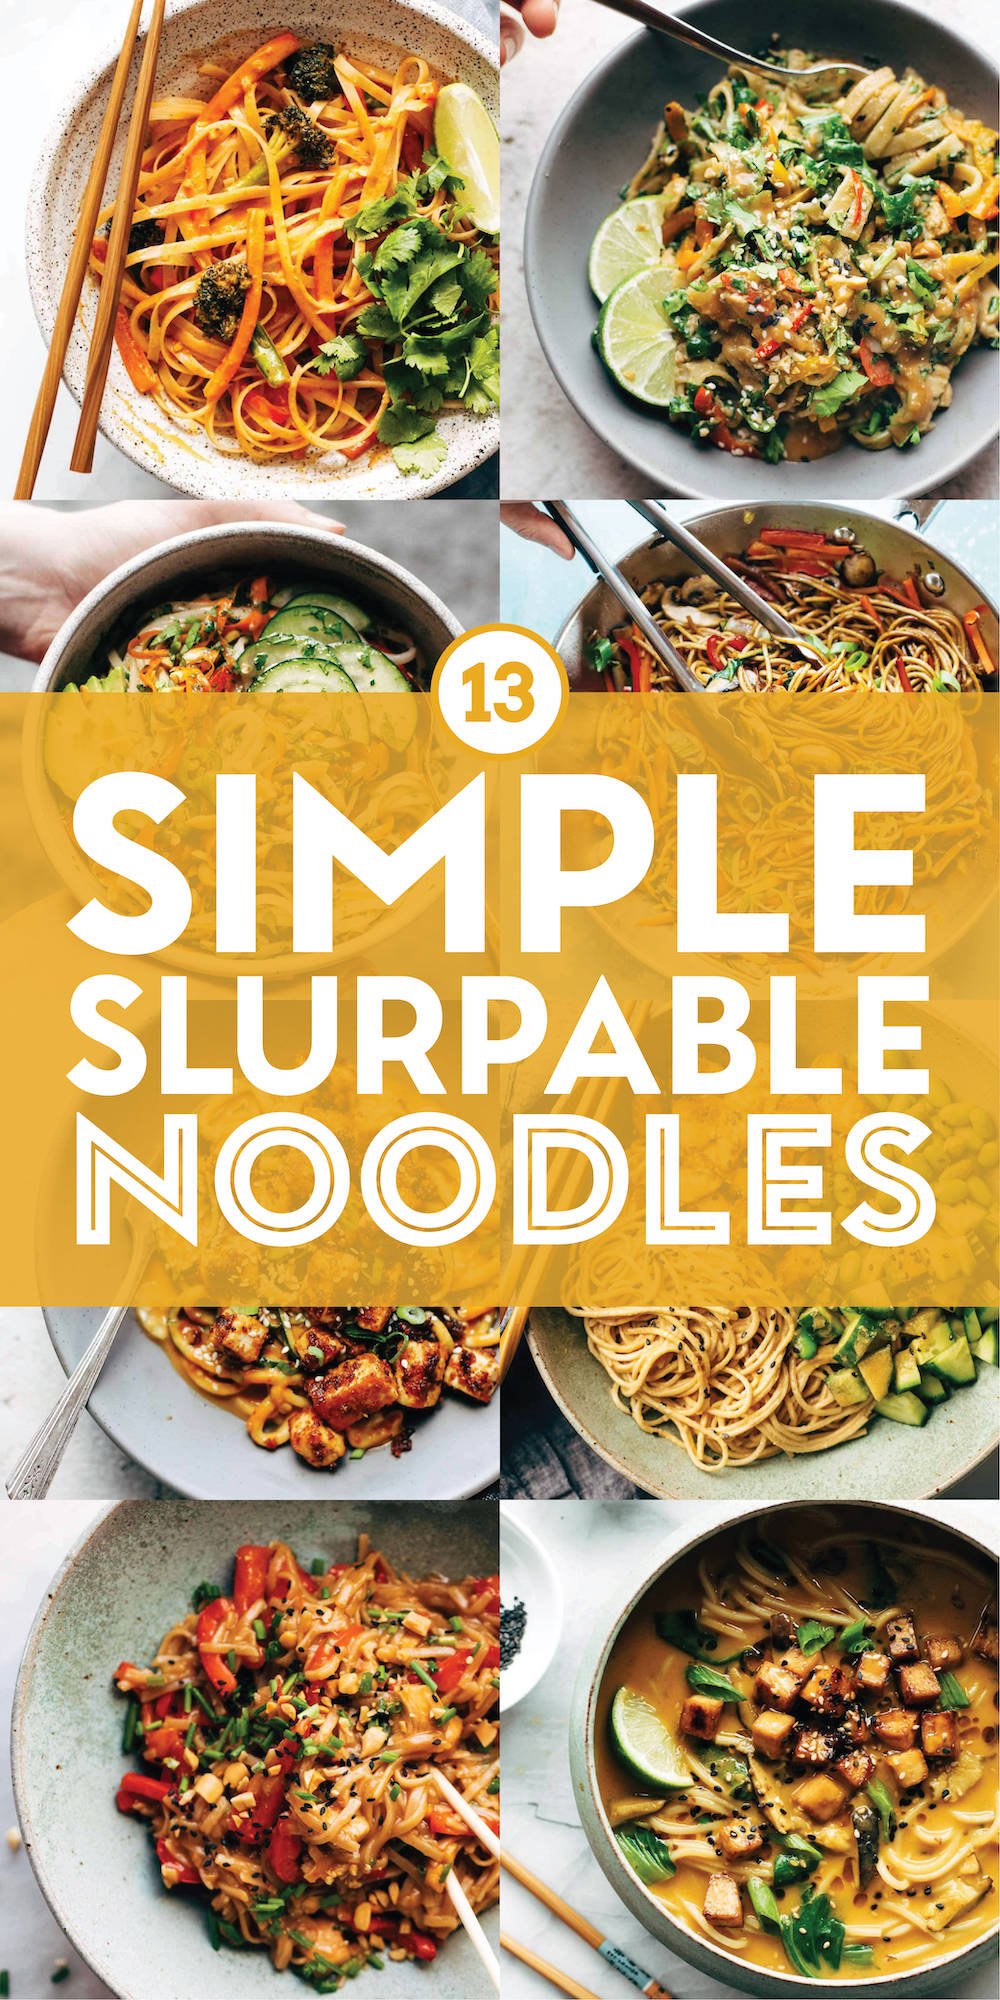 https://pinchofyum.com/wp-content/uploads/Simple-Slurpable-Noodles-Pin.jpg